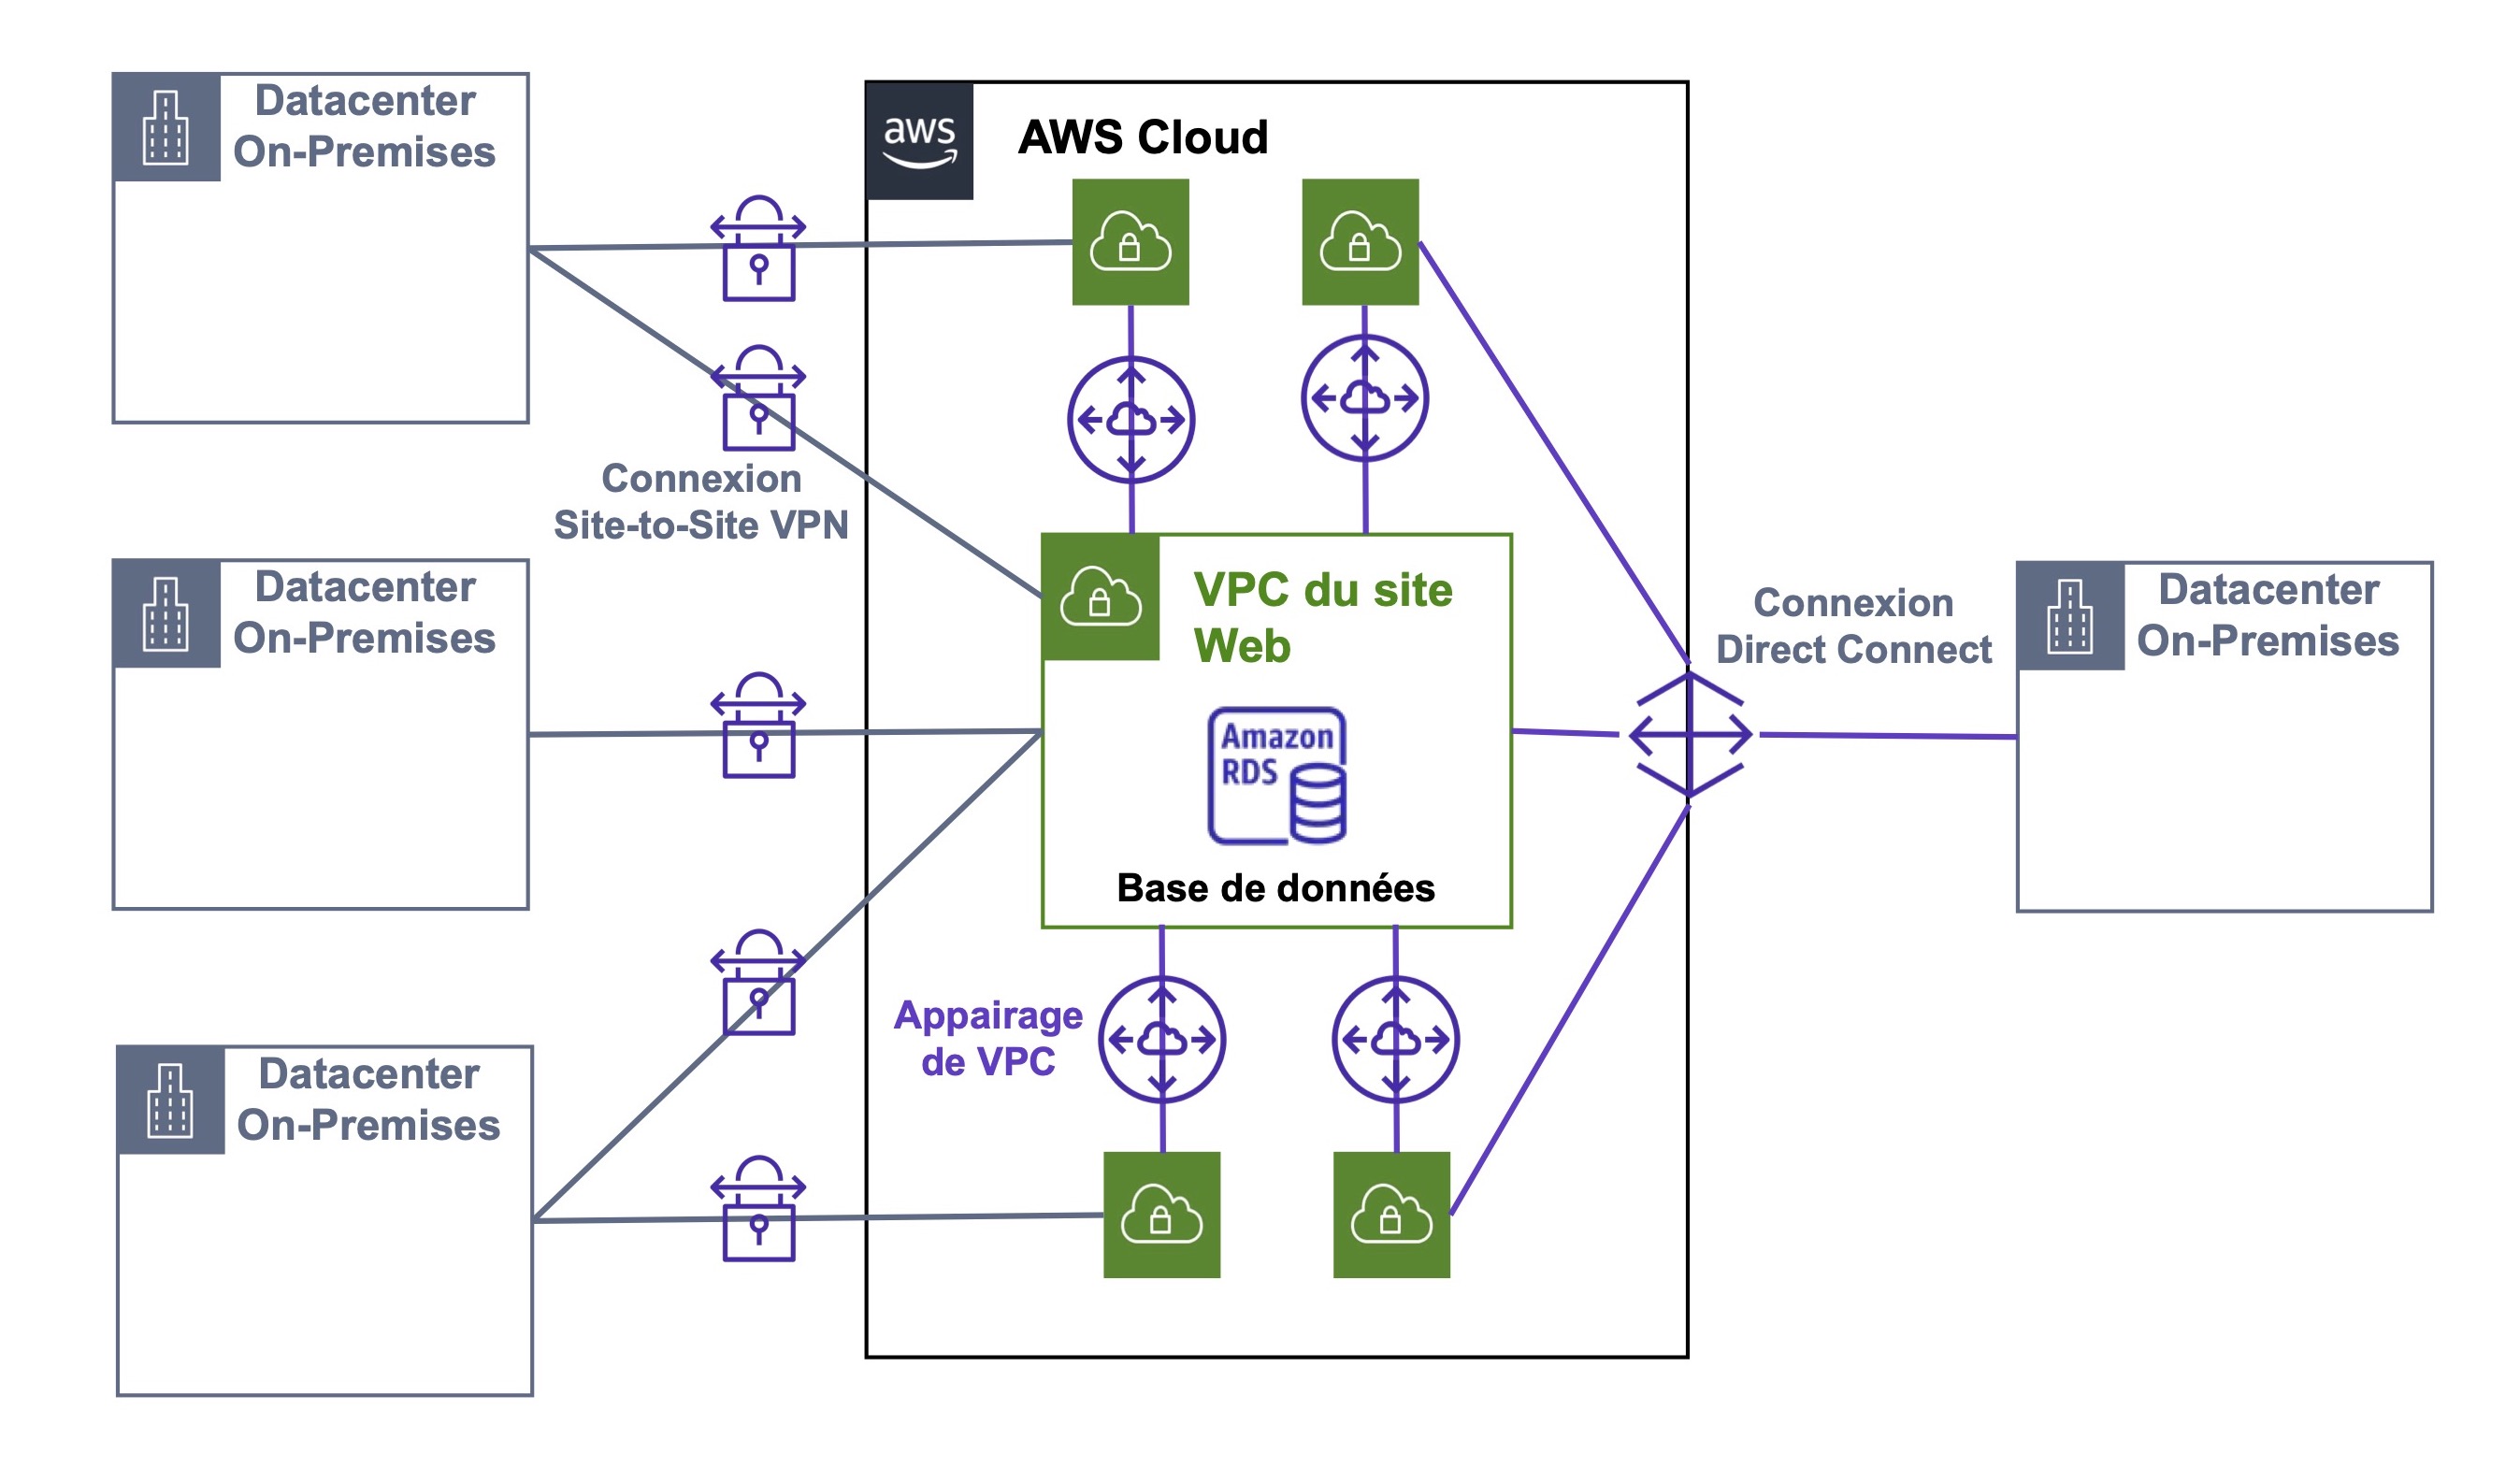 Plusieurs Datacenters On-Premises se connectent avec le VPC du site web via les connexions Site-to-site VPN et connexion Direct Connect